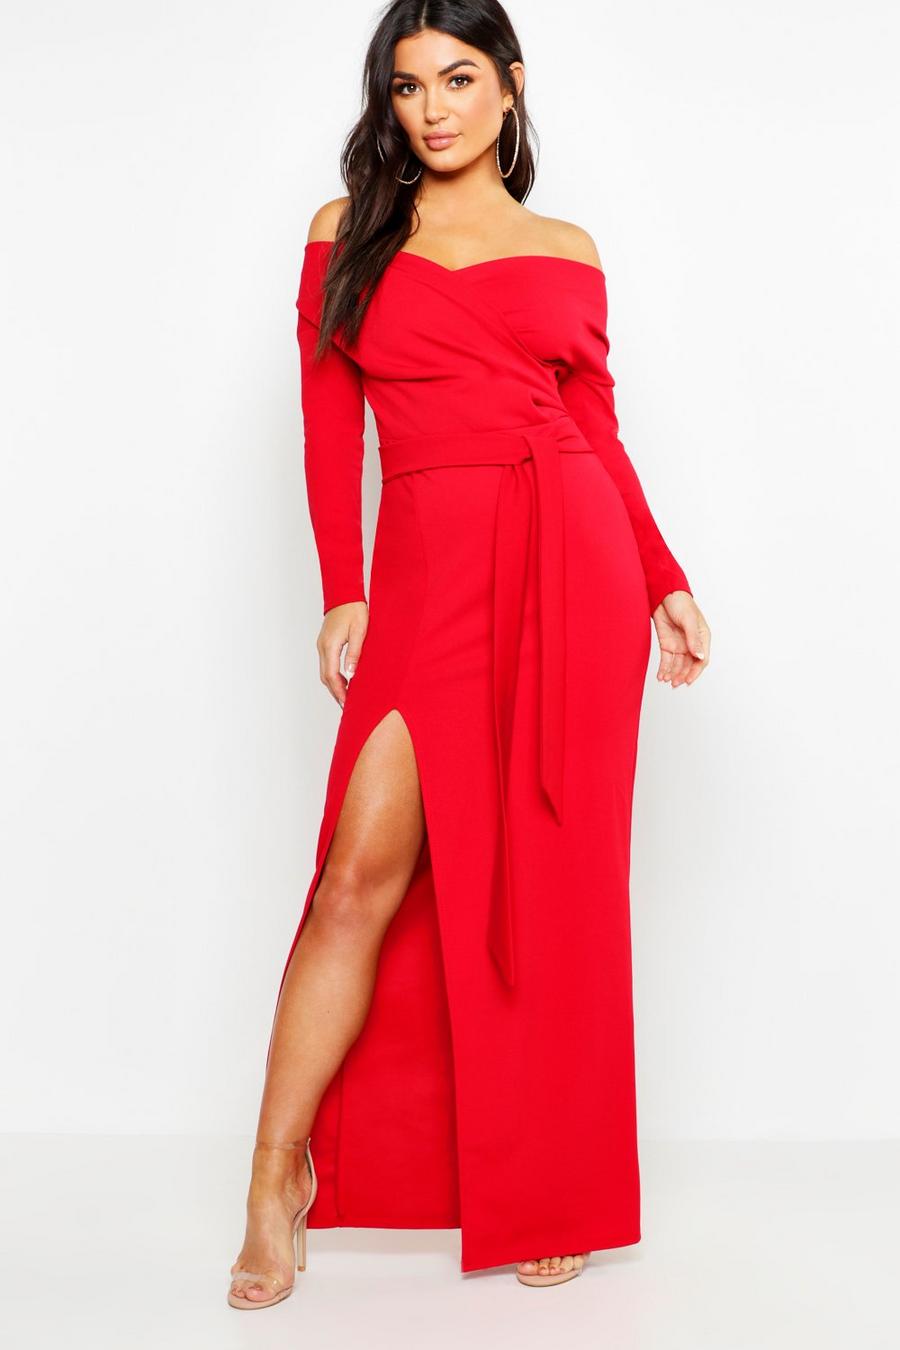 אדום rosso שמלת שושבינה מקסי חשופת כתפיים עם שסע